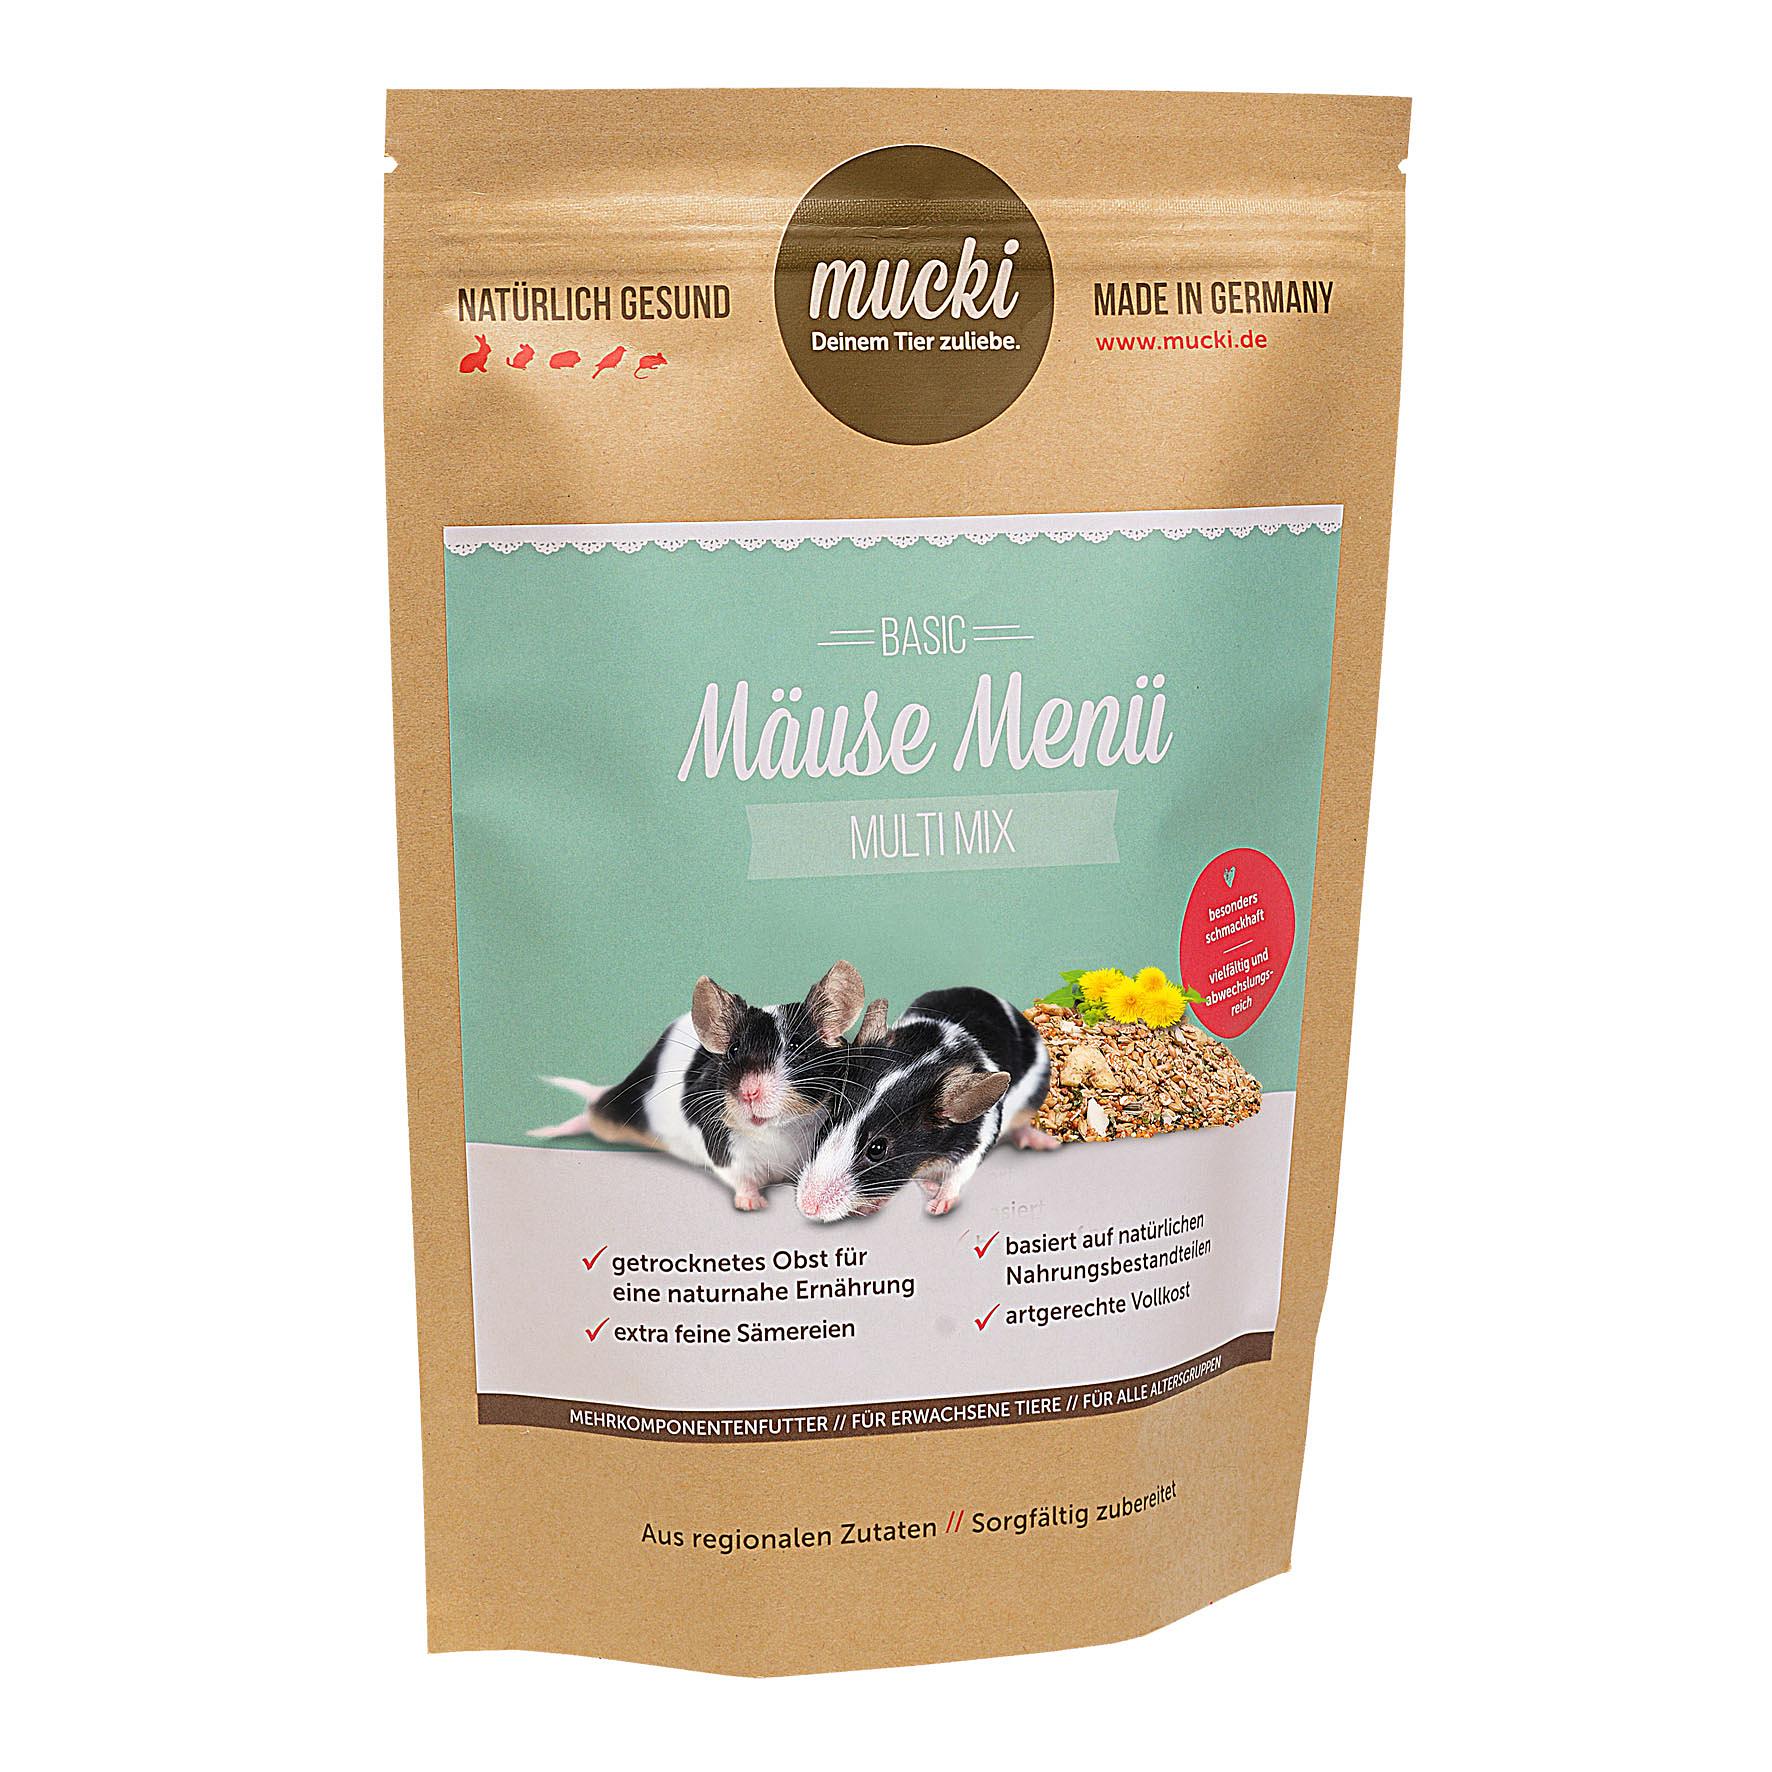 Mucki Mäuse Menü Multi Mix